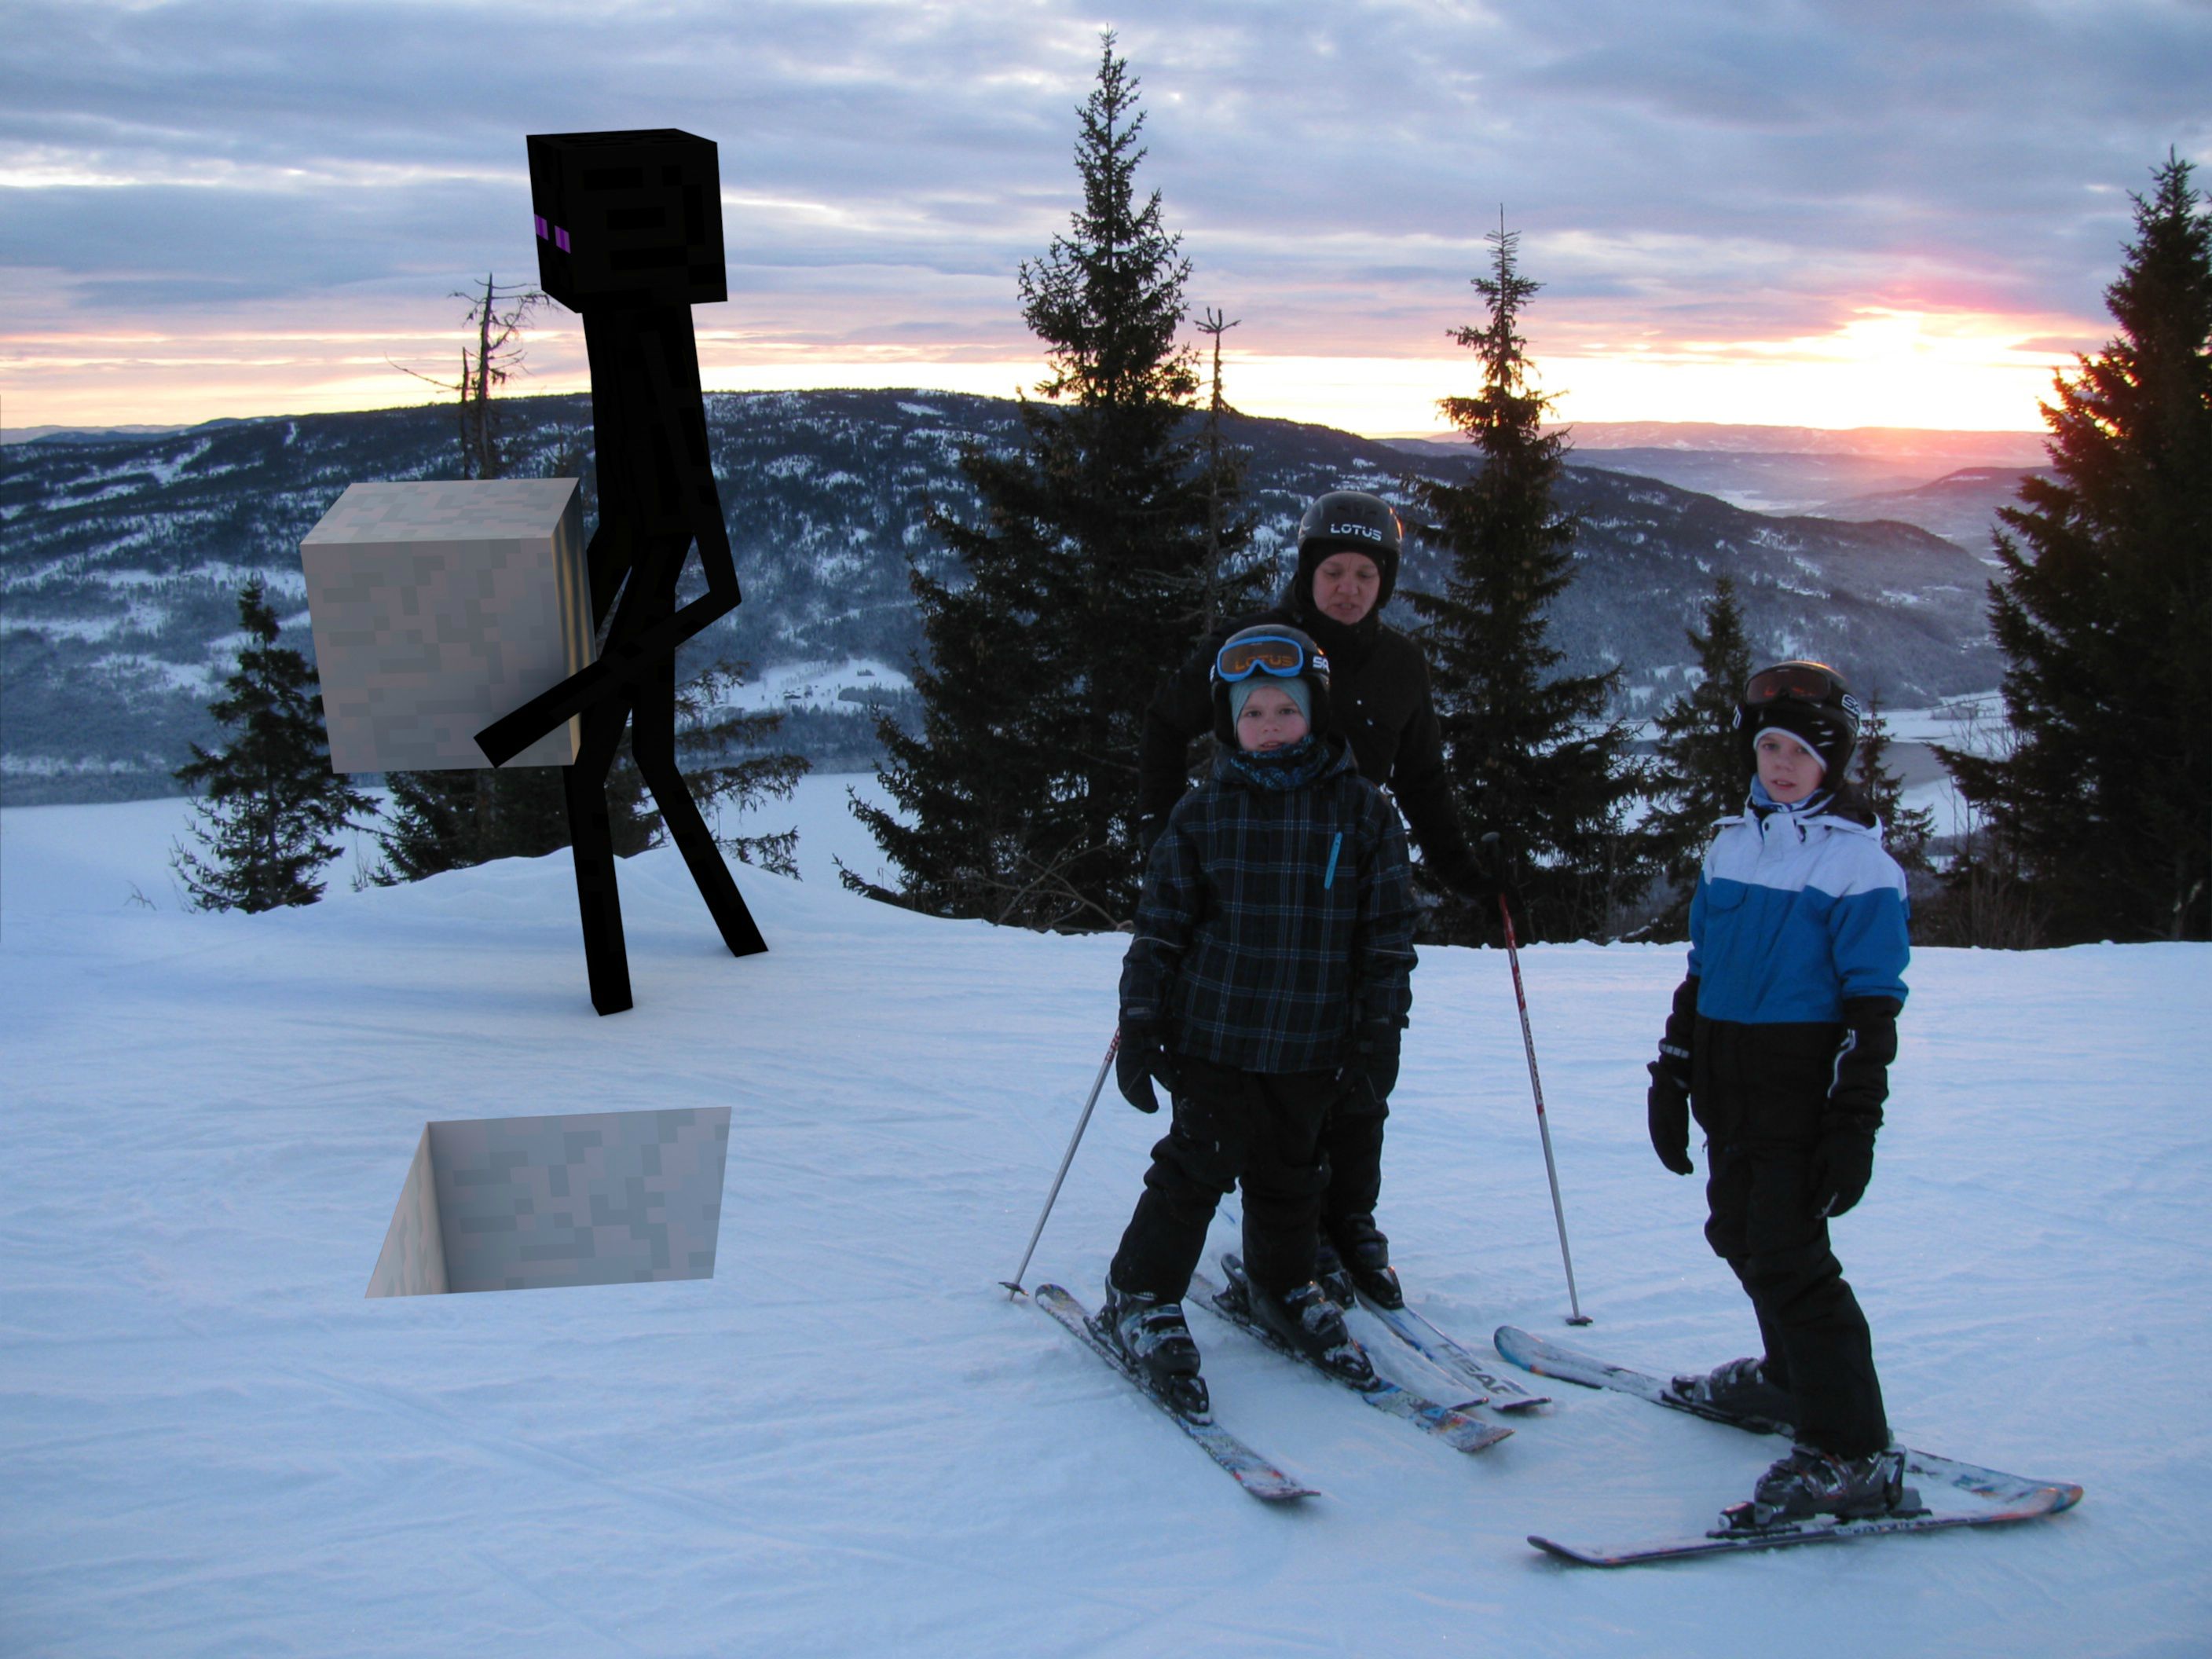 awesome random pics - ski pole